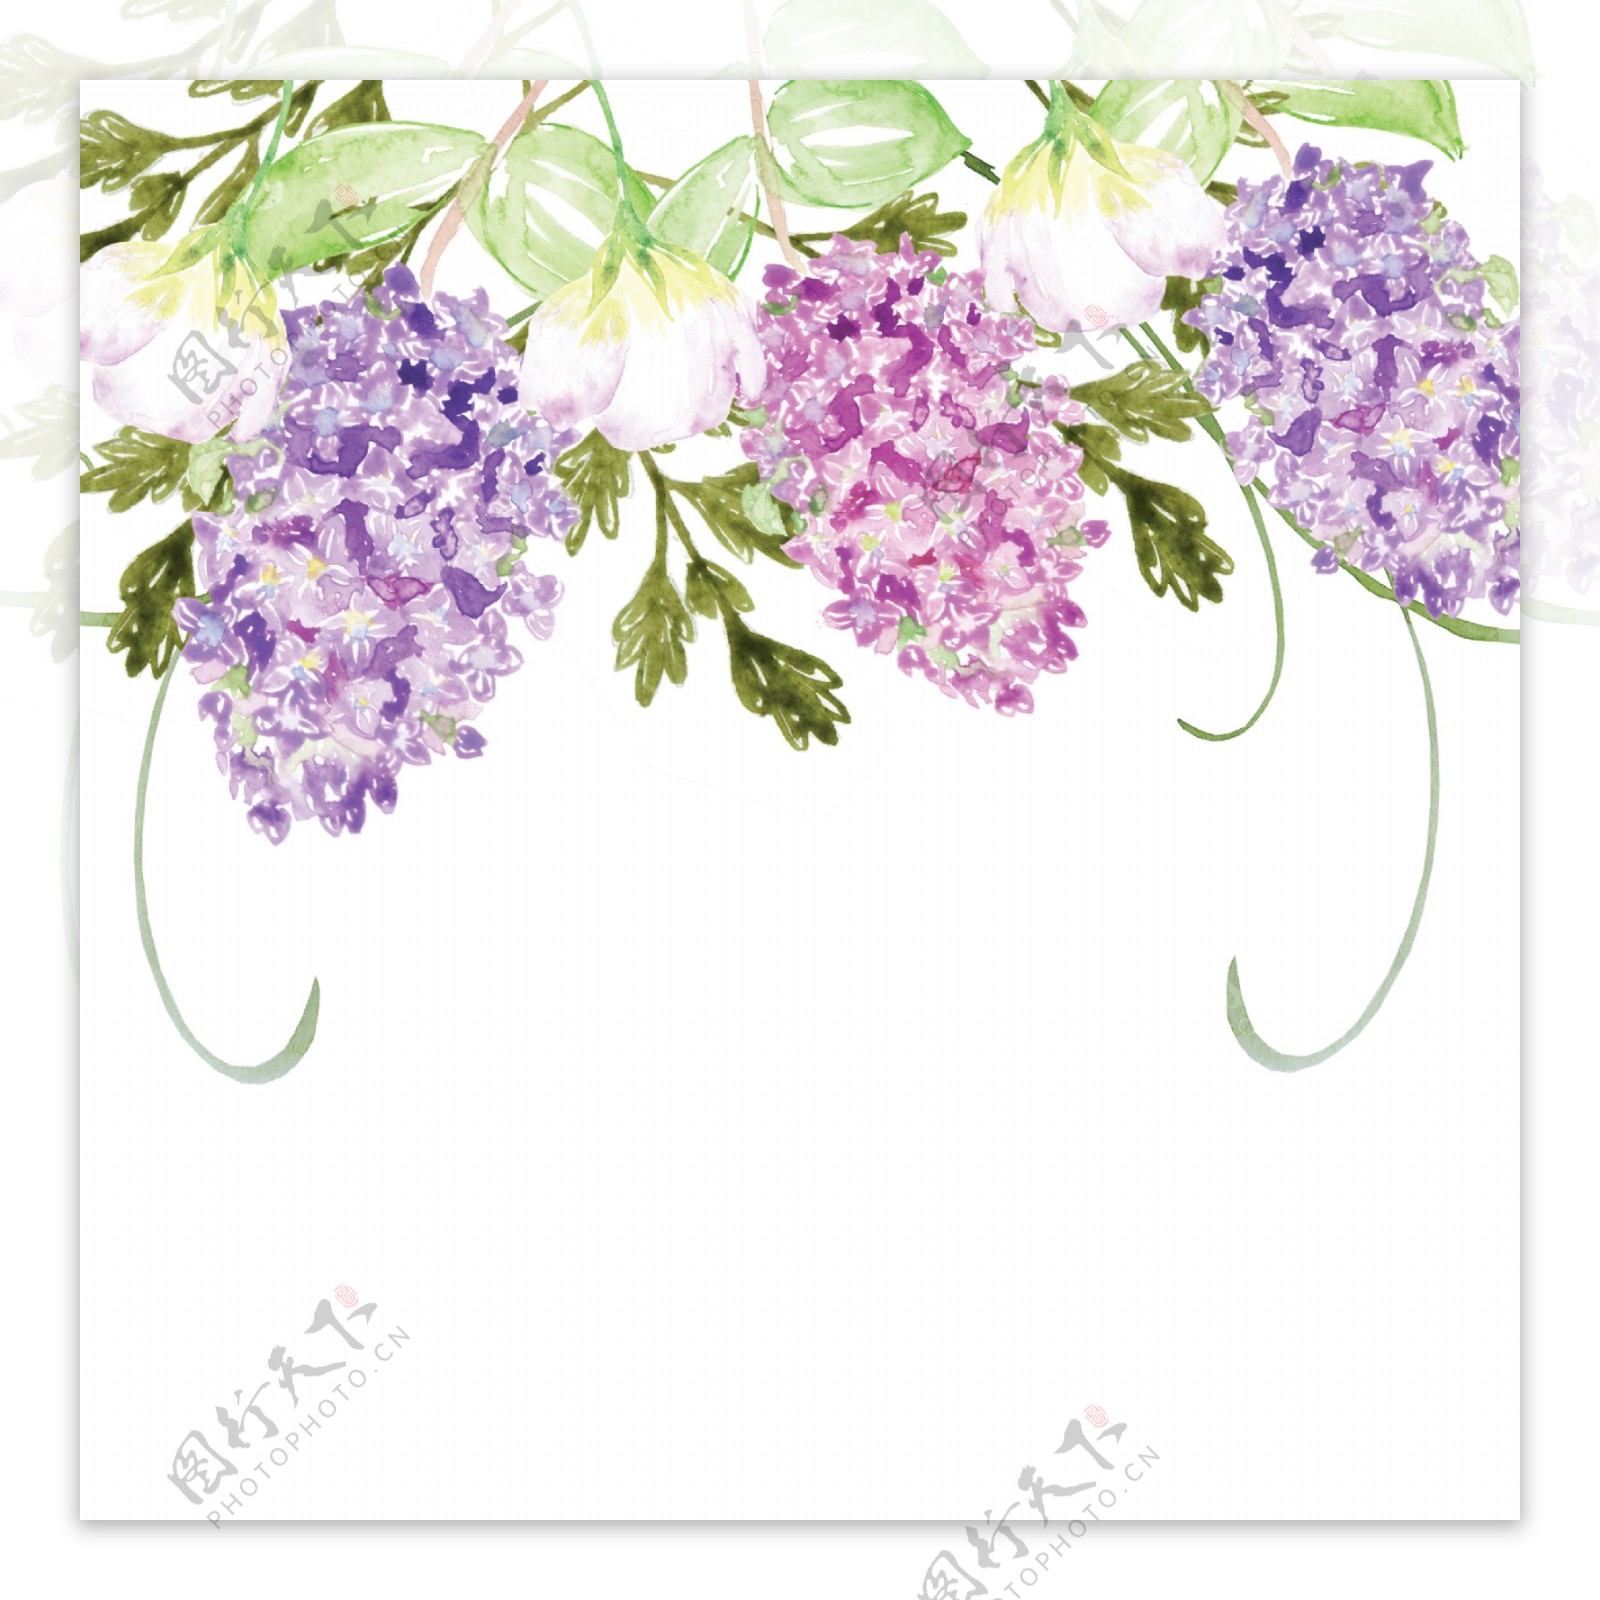 紫色茂密花卉卡通透明素材